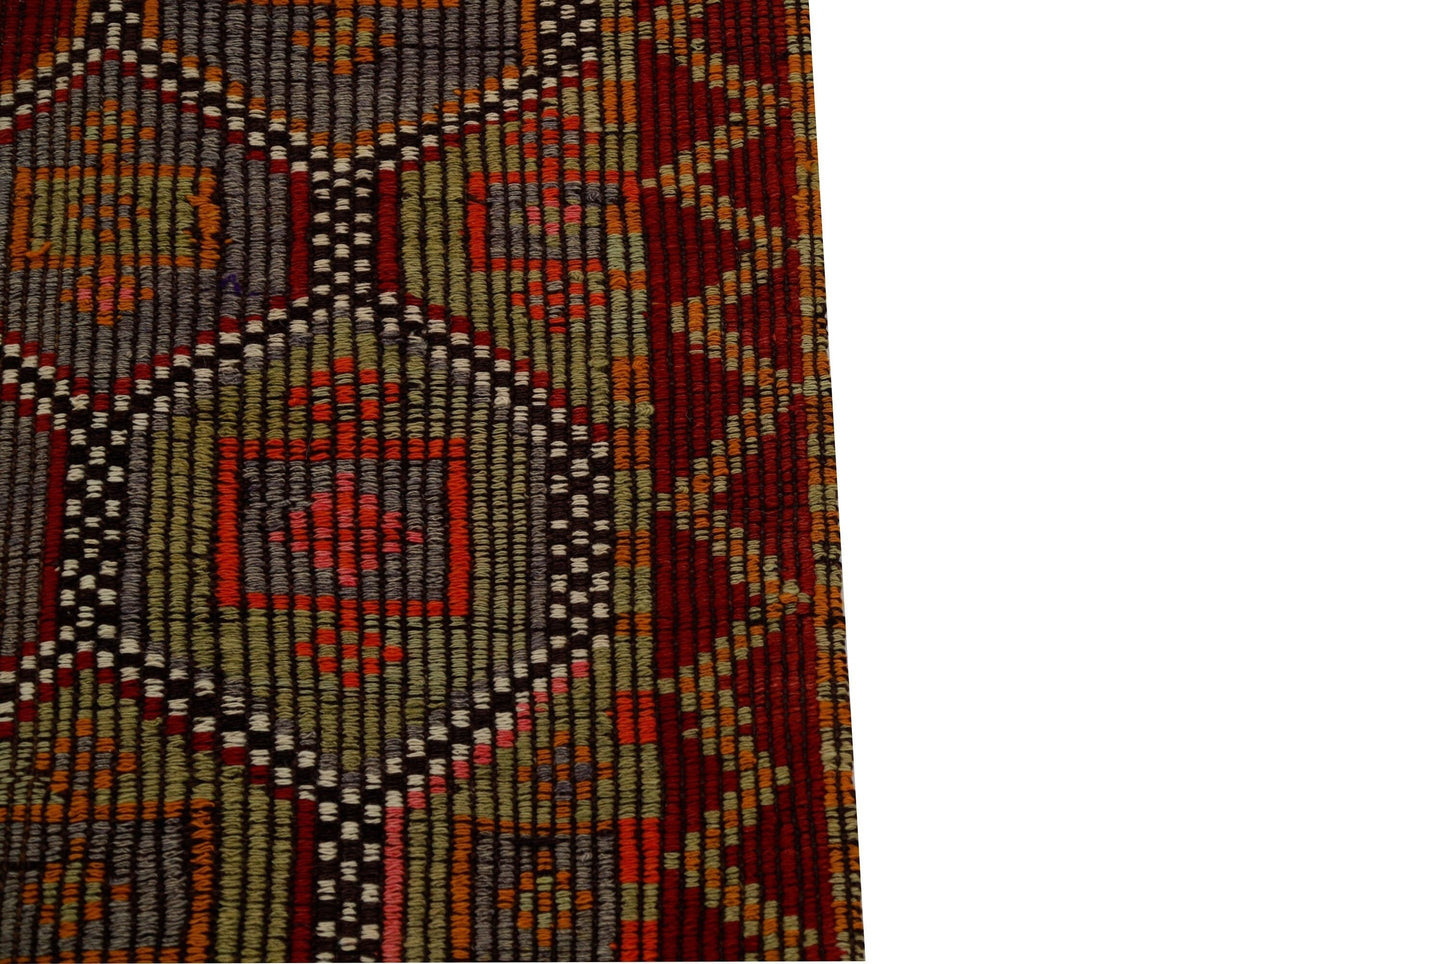 Turkish Rug, Vintage Rug, Traditional Decor, Kilim Rug, Area Rug, Kilim Rug, Anatolia Rug, Eclectic Rug, Boho Rug, Living Room Rug, 2990